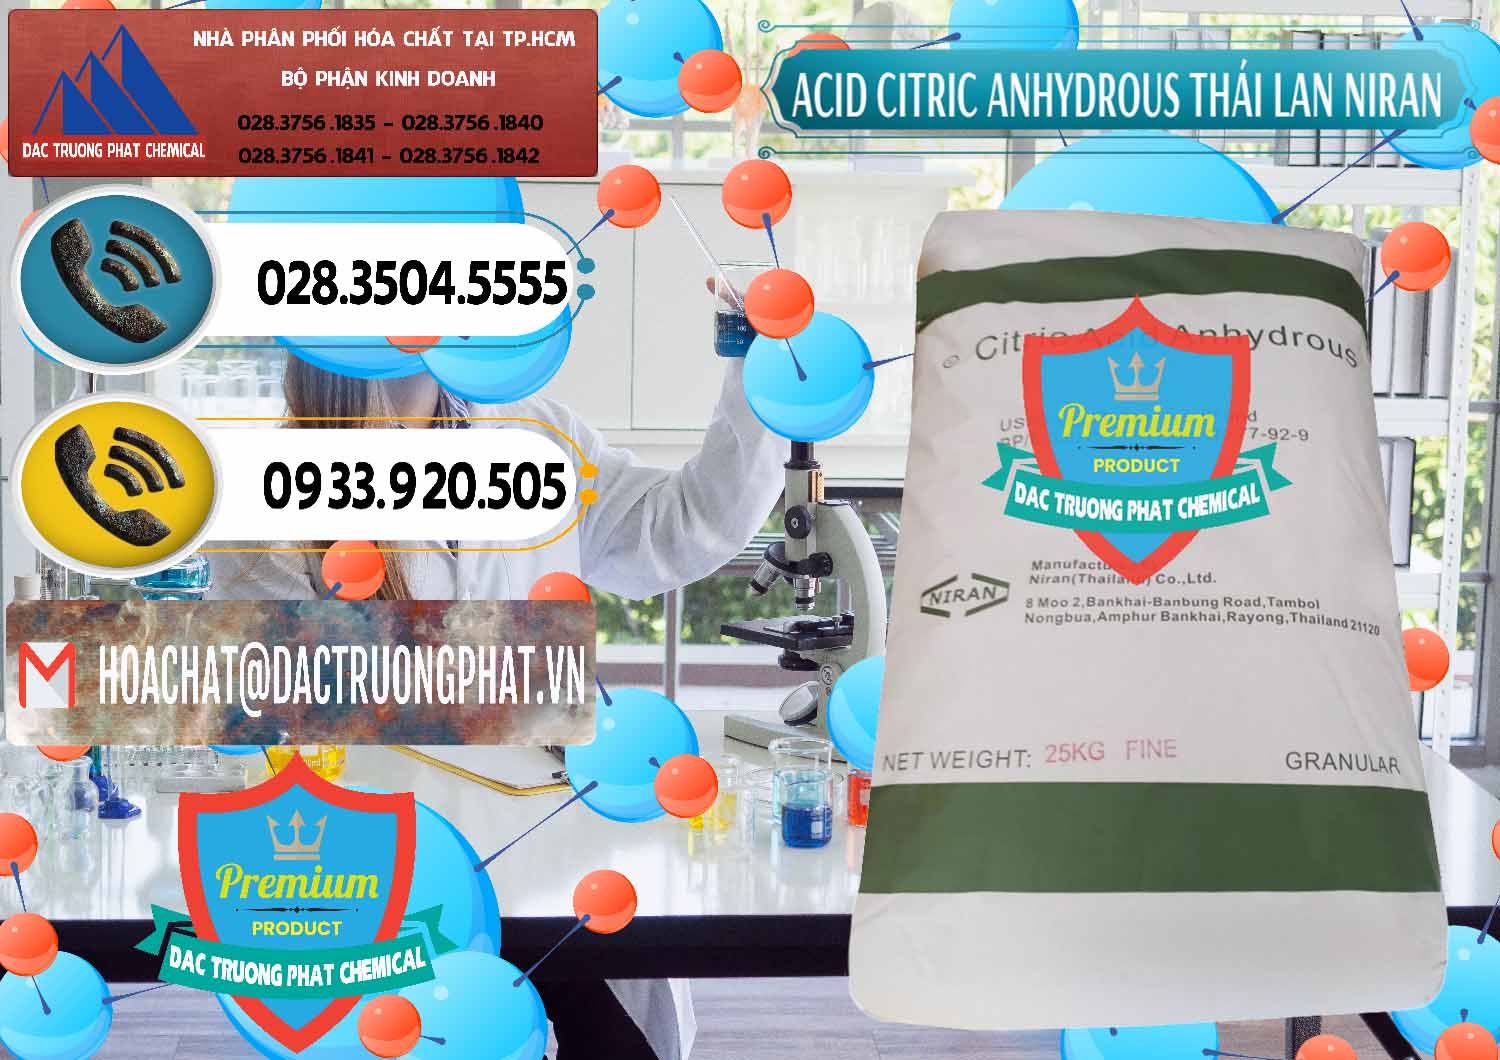 Công ty chuyên bán - cung ứng Acid Citric - Axit Citric Anhydrous - Thái Lan Niran - 0231 - Nơi chuyên phân phối ( nhập khẩu ) hóa chất tại TP.HCM - hoachatdetnhuom.vn